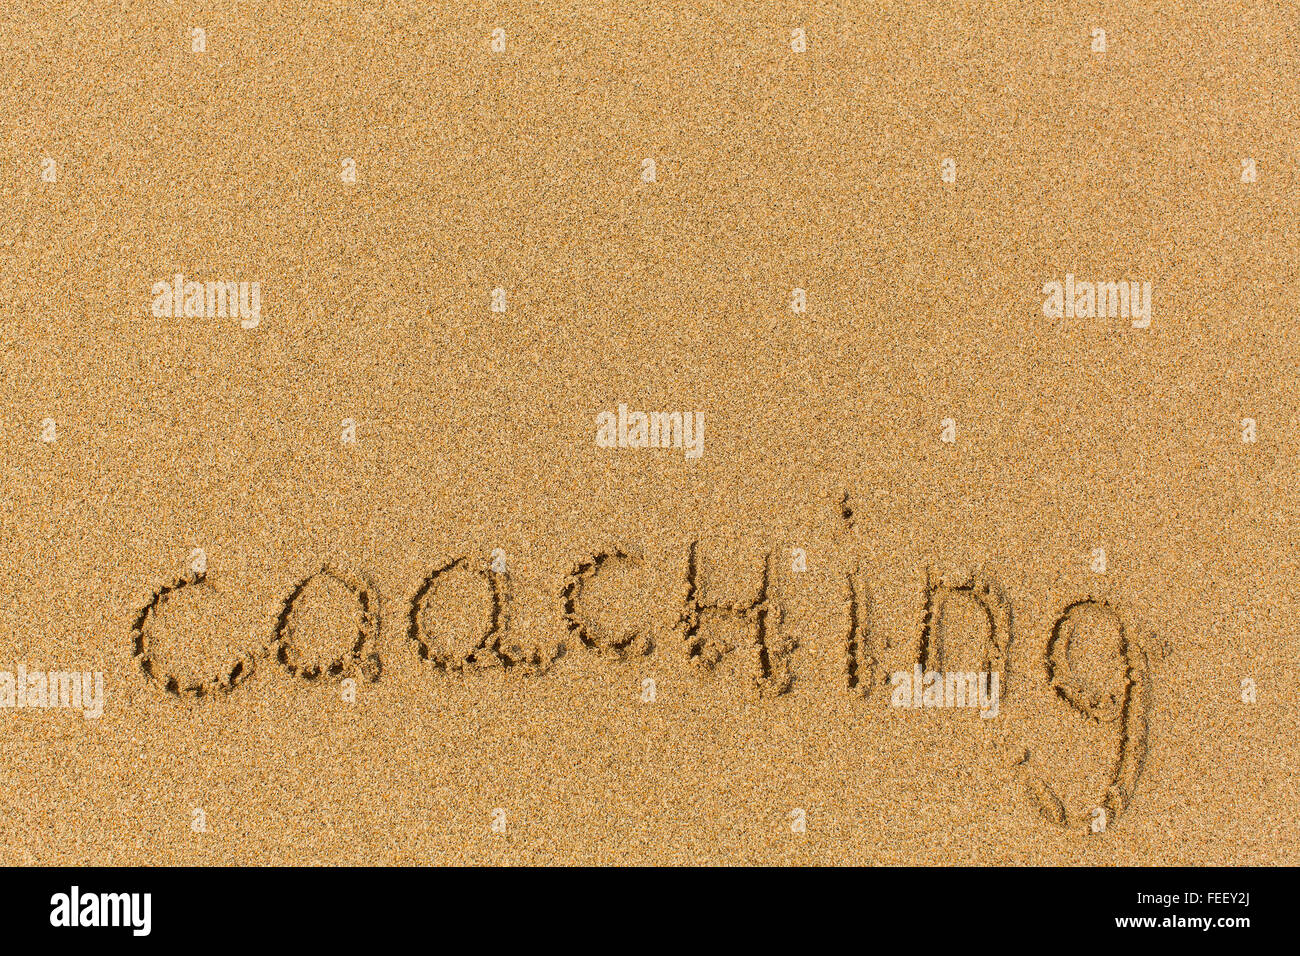 Coaching - parola tracciata sulla spiaggia di sabbia. Sfondo, la consistenza della sabbia. Foto Stock